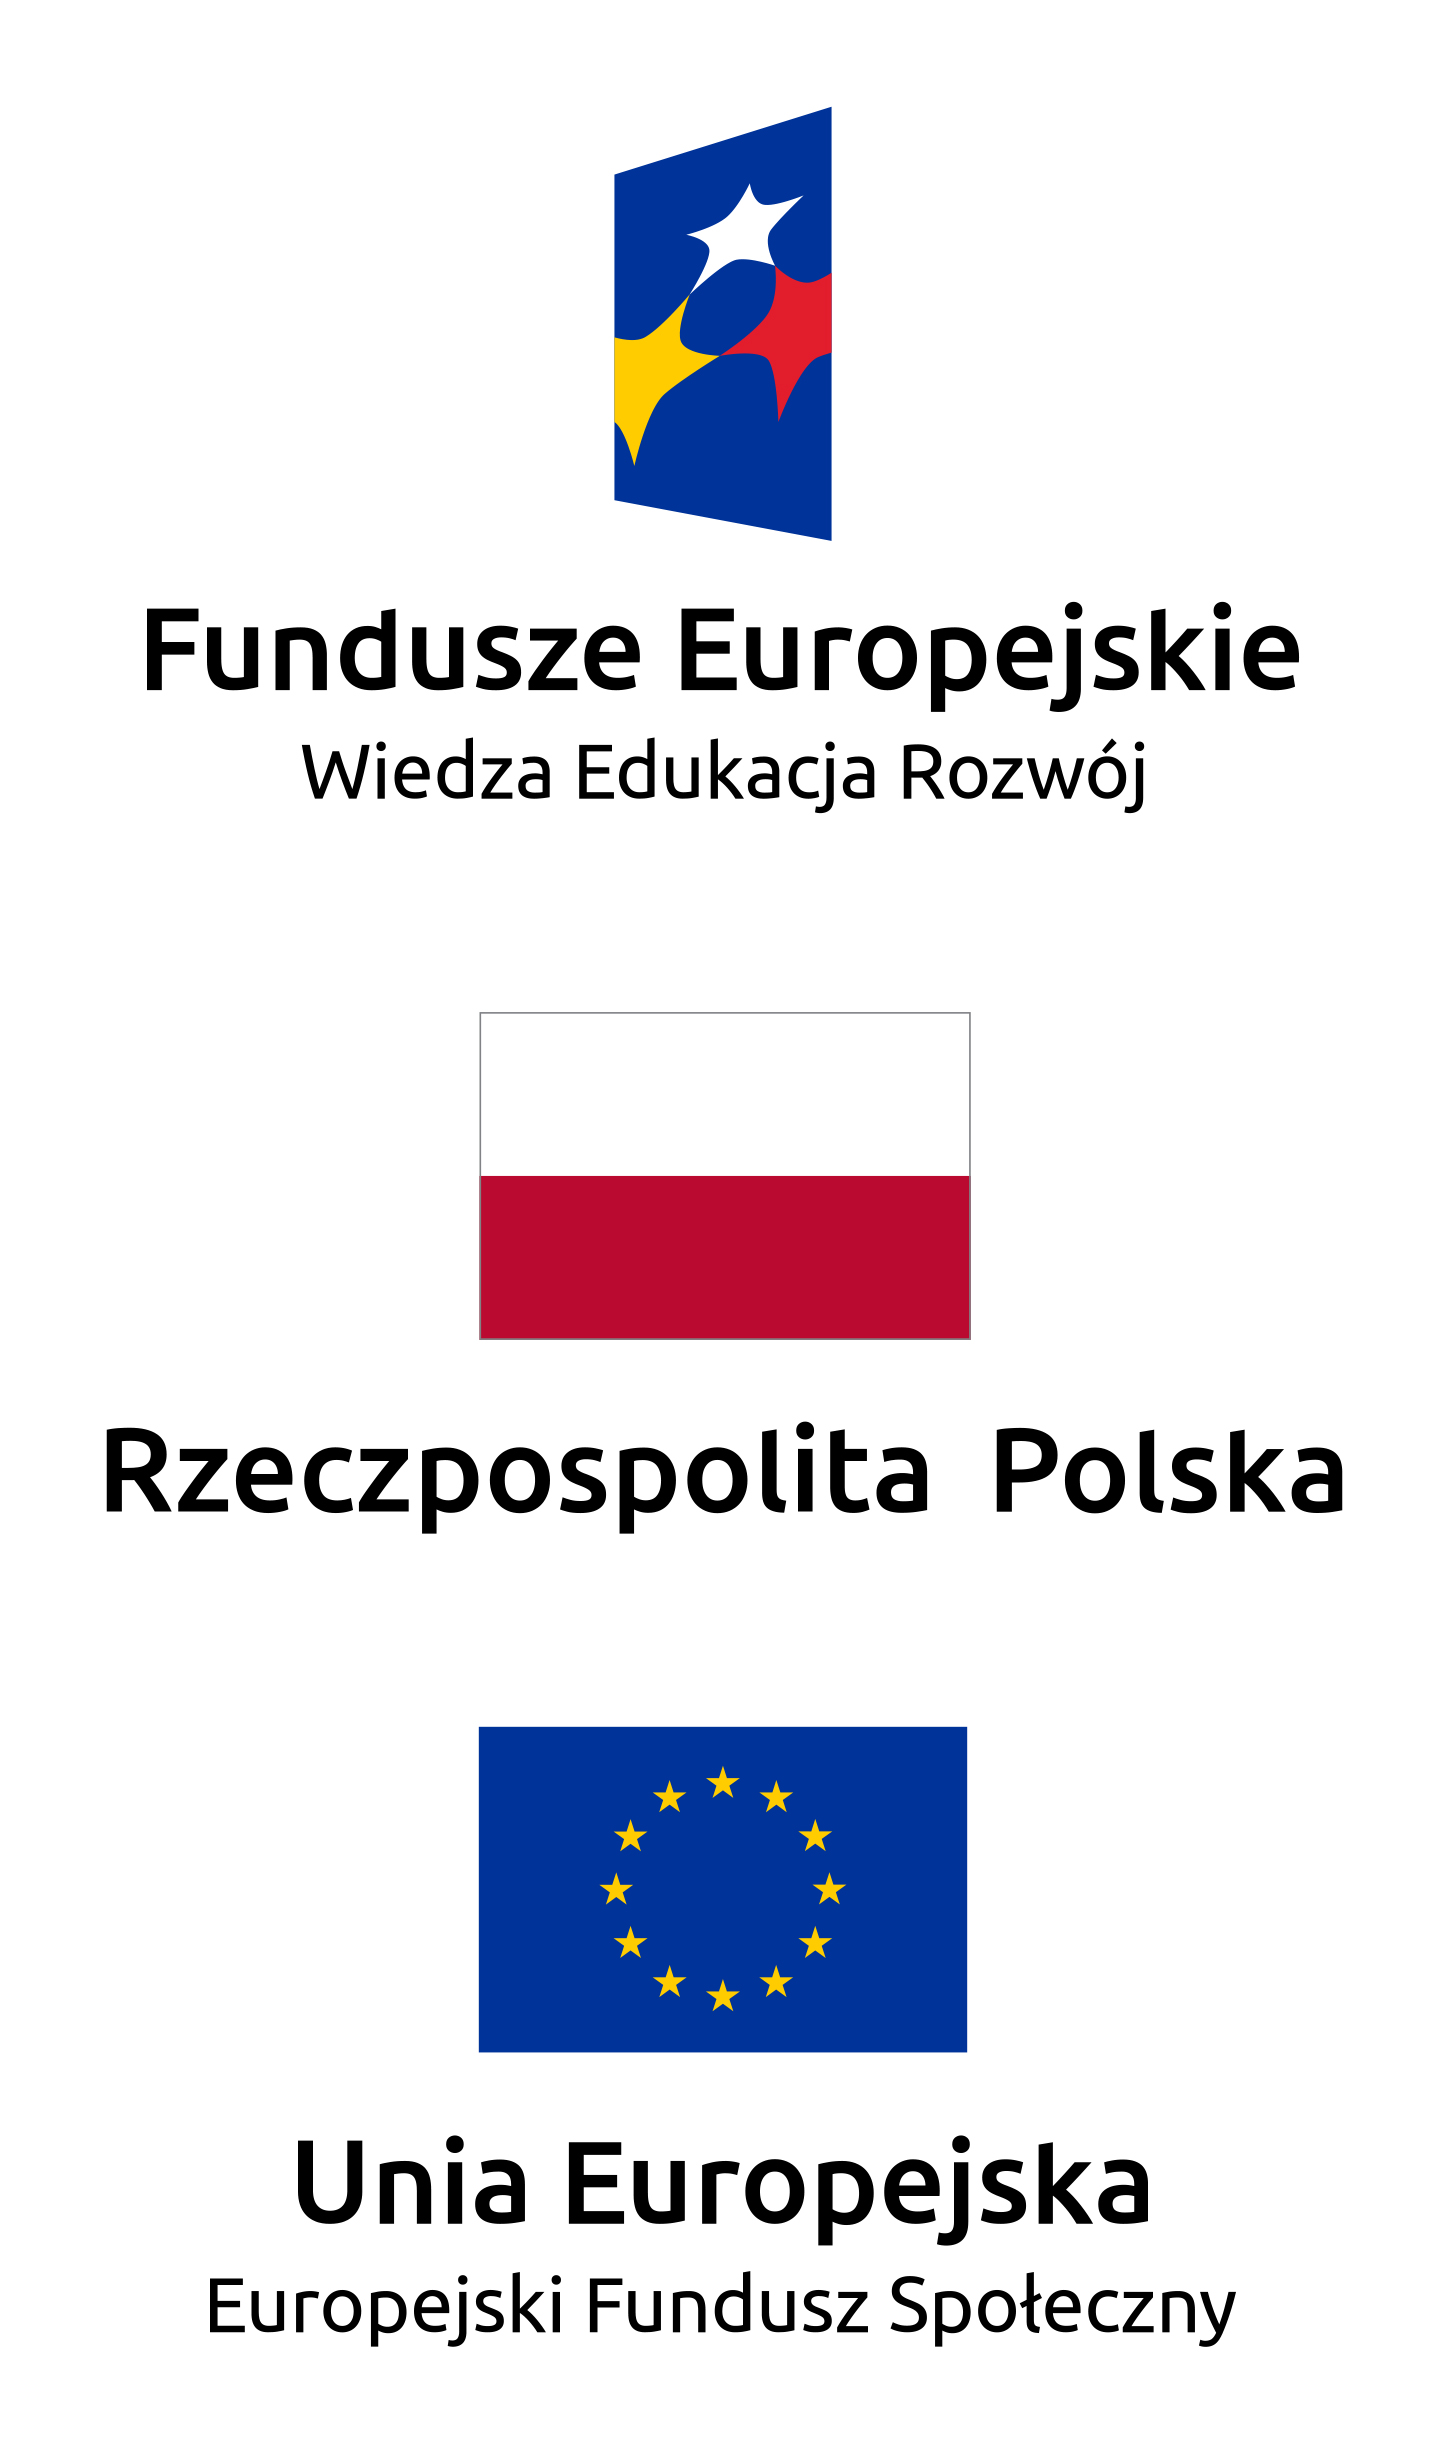 Logotypy Funduszy Europejskich, Rzeczpospolitej Polskiej, Unii Europejskiej